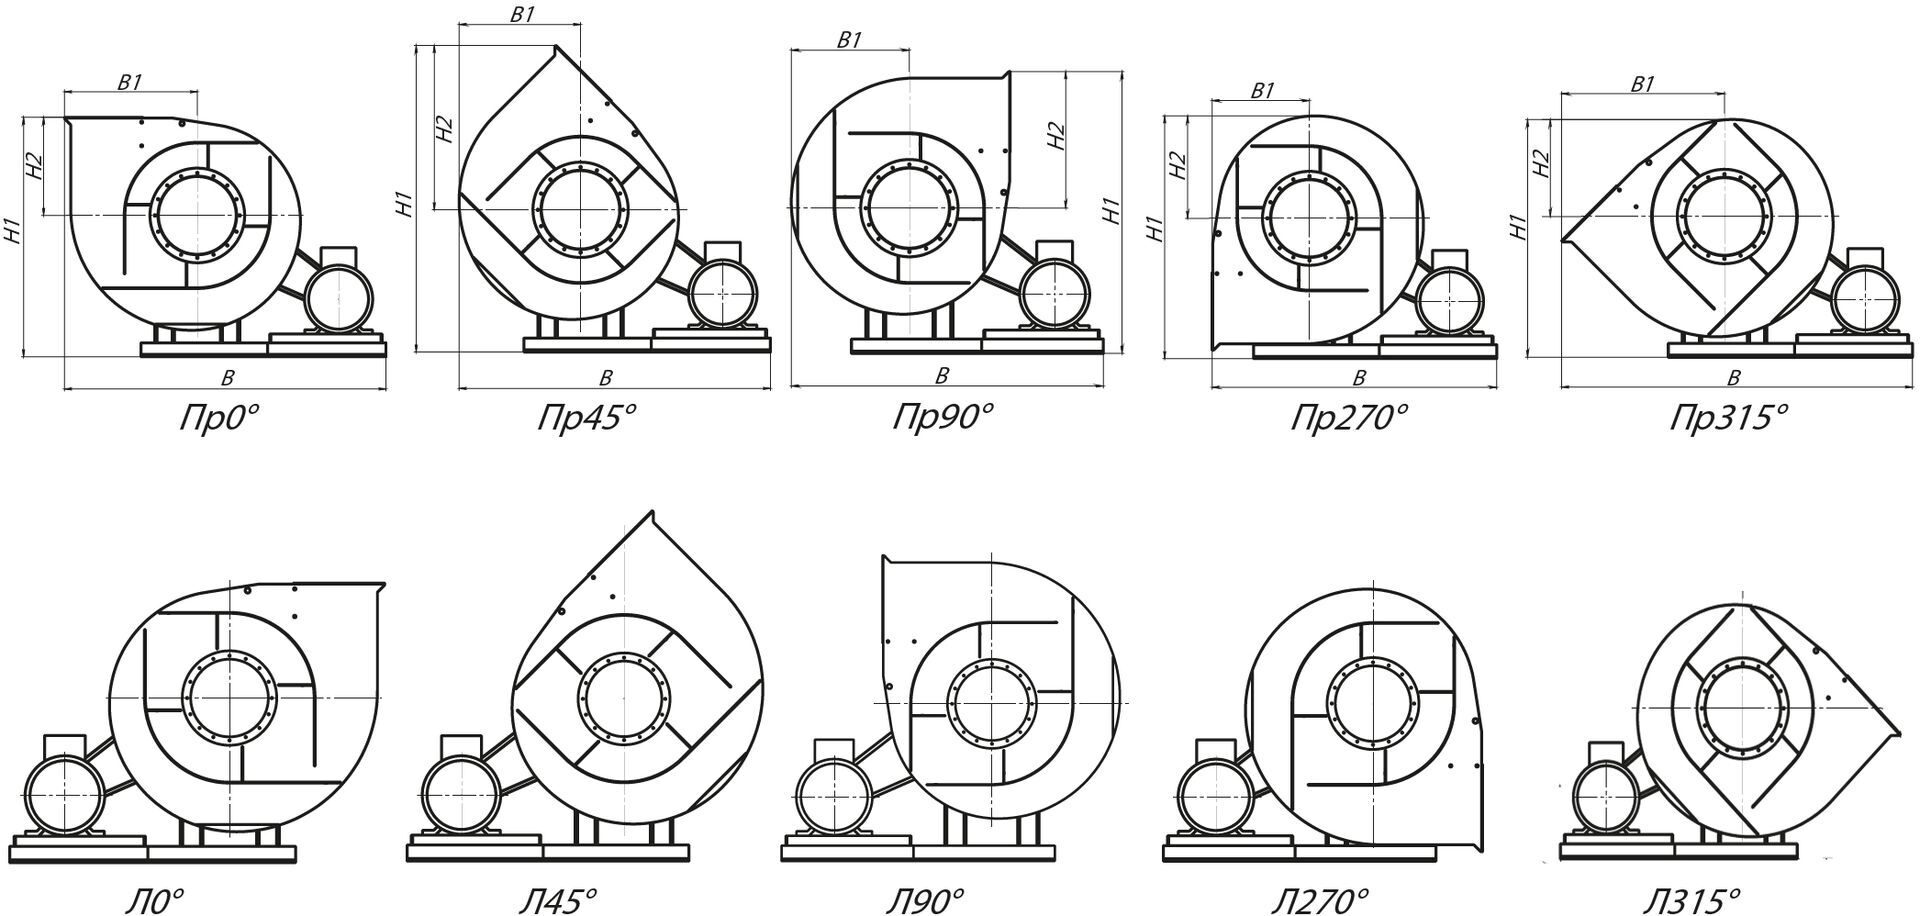 Стандартные варианты углов поворота корпуса вентиляторов ВРП 122-45-12,5 (№12,5) схема 5 (исполнение 5)